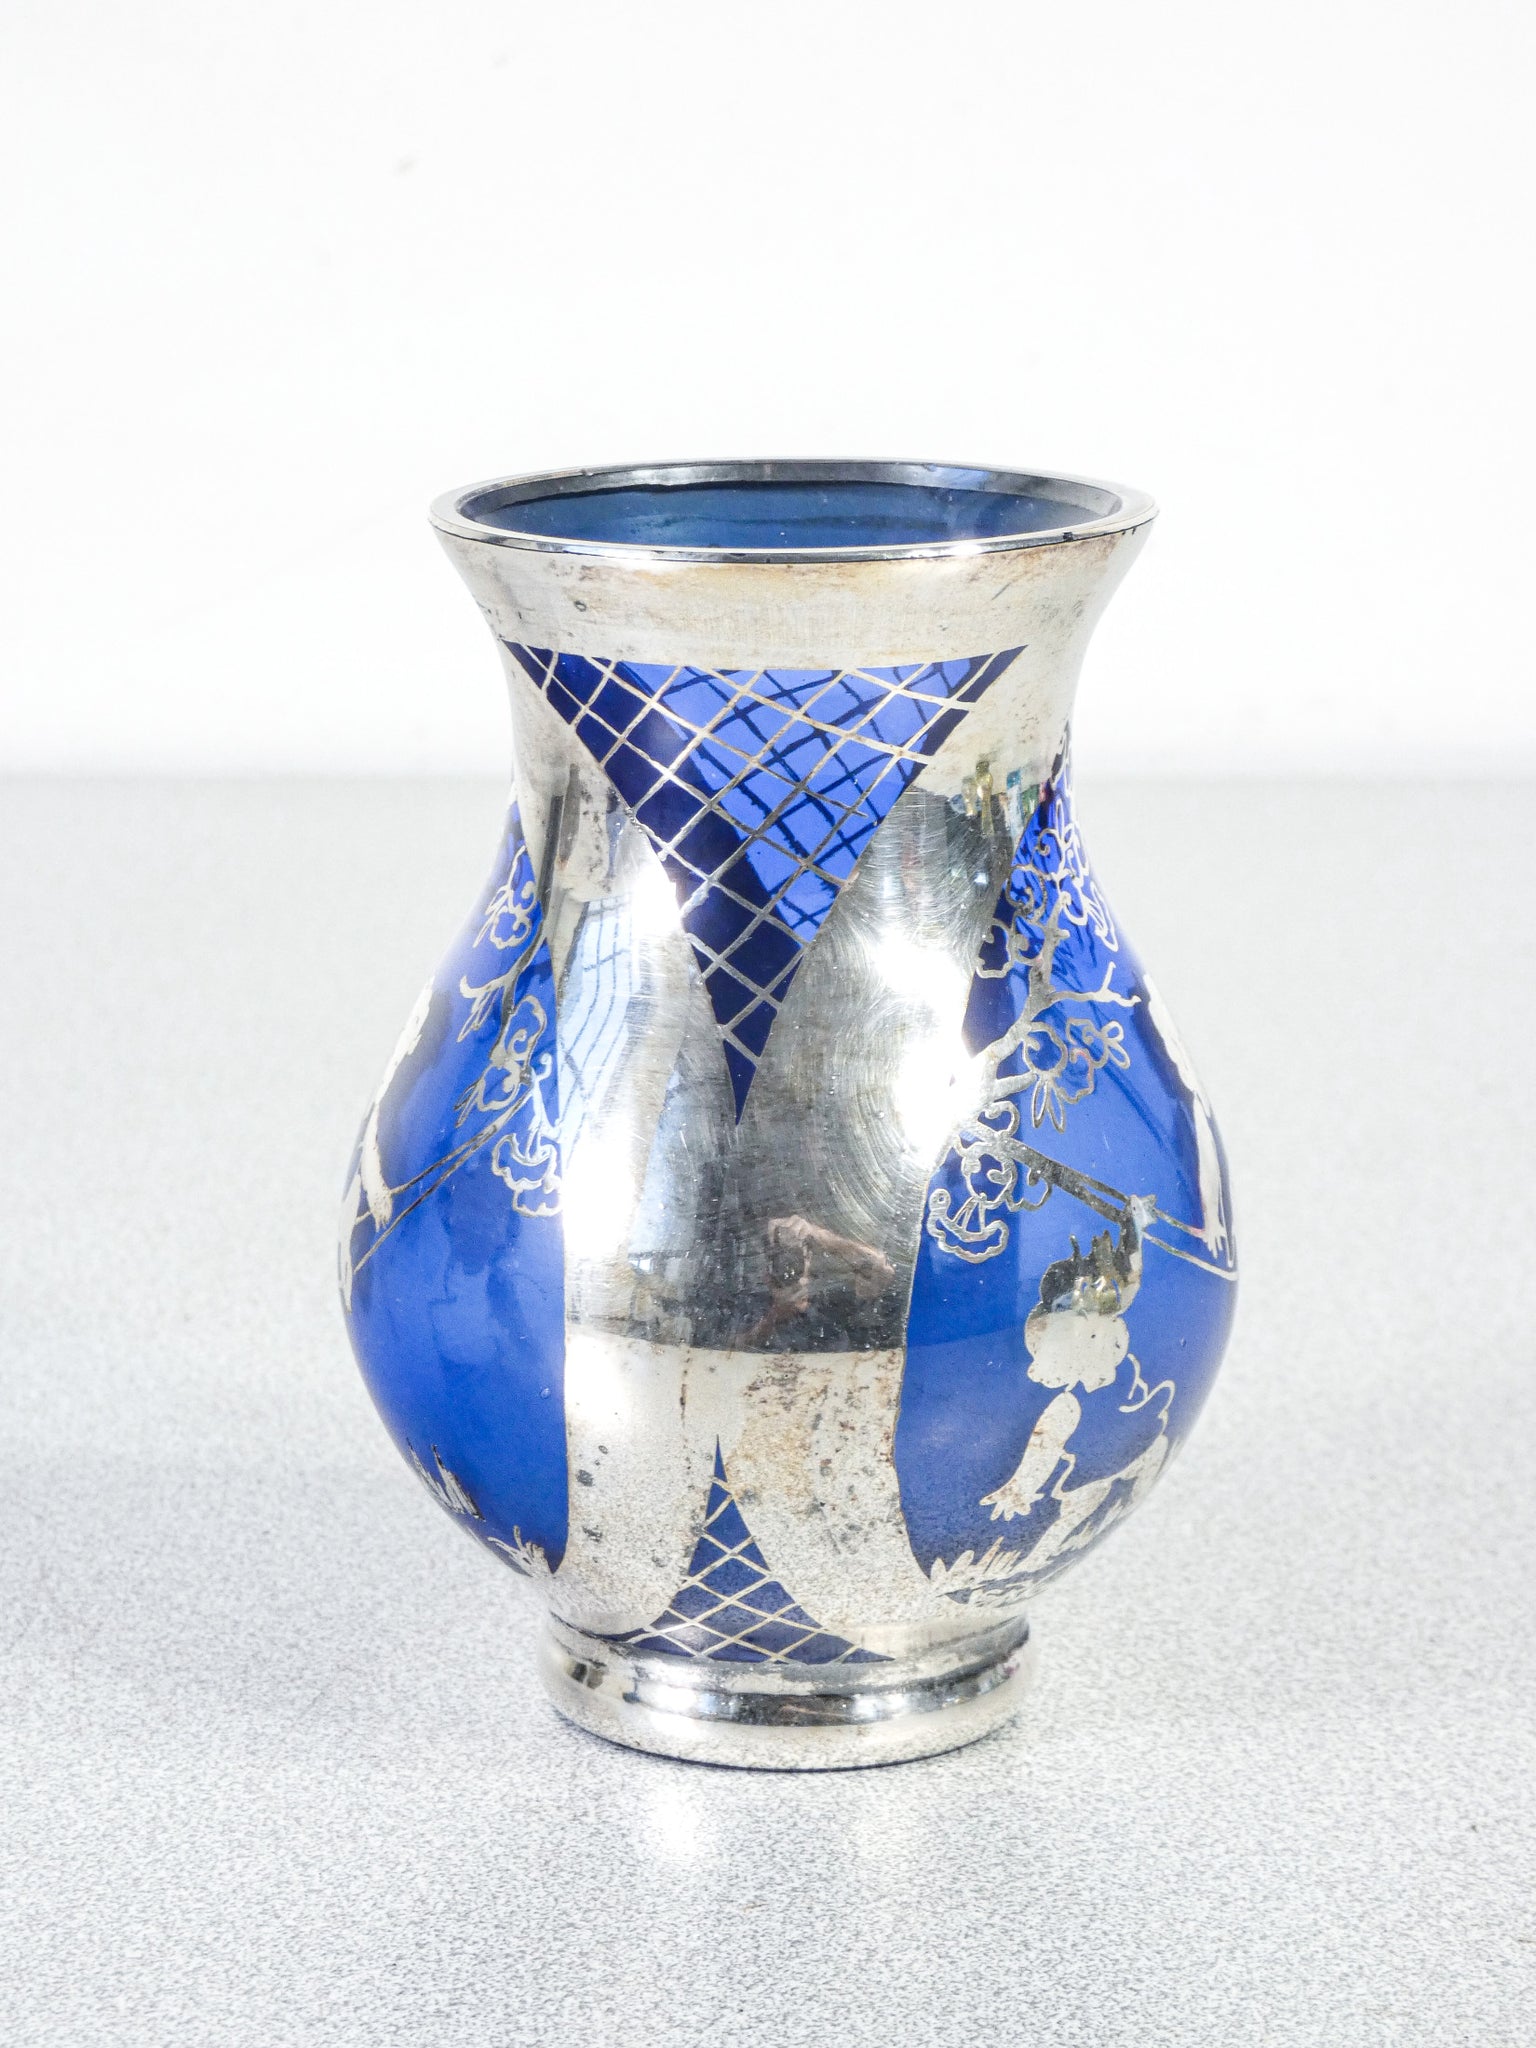 set 3 vasetti vetro soffiato argento smalto murano vasi italia epoca 1900